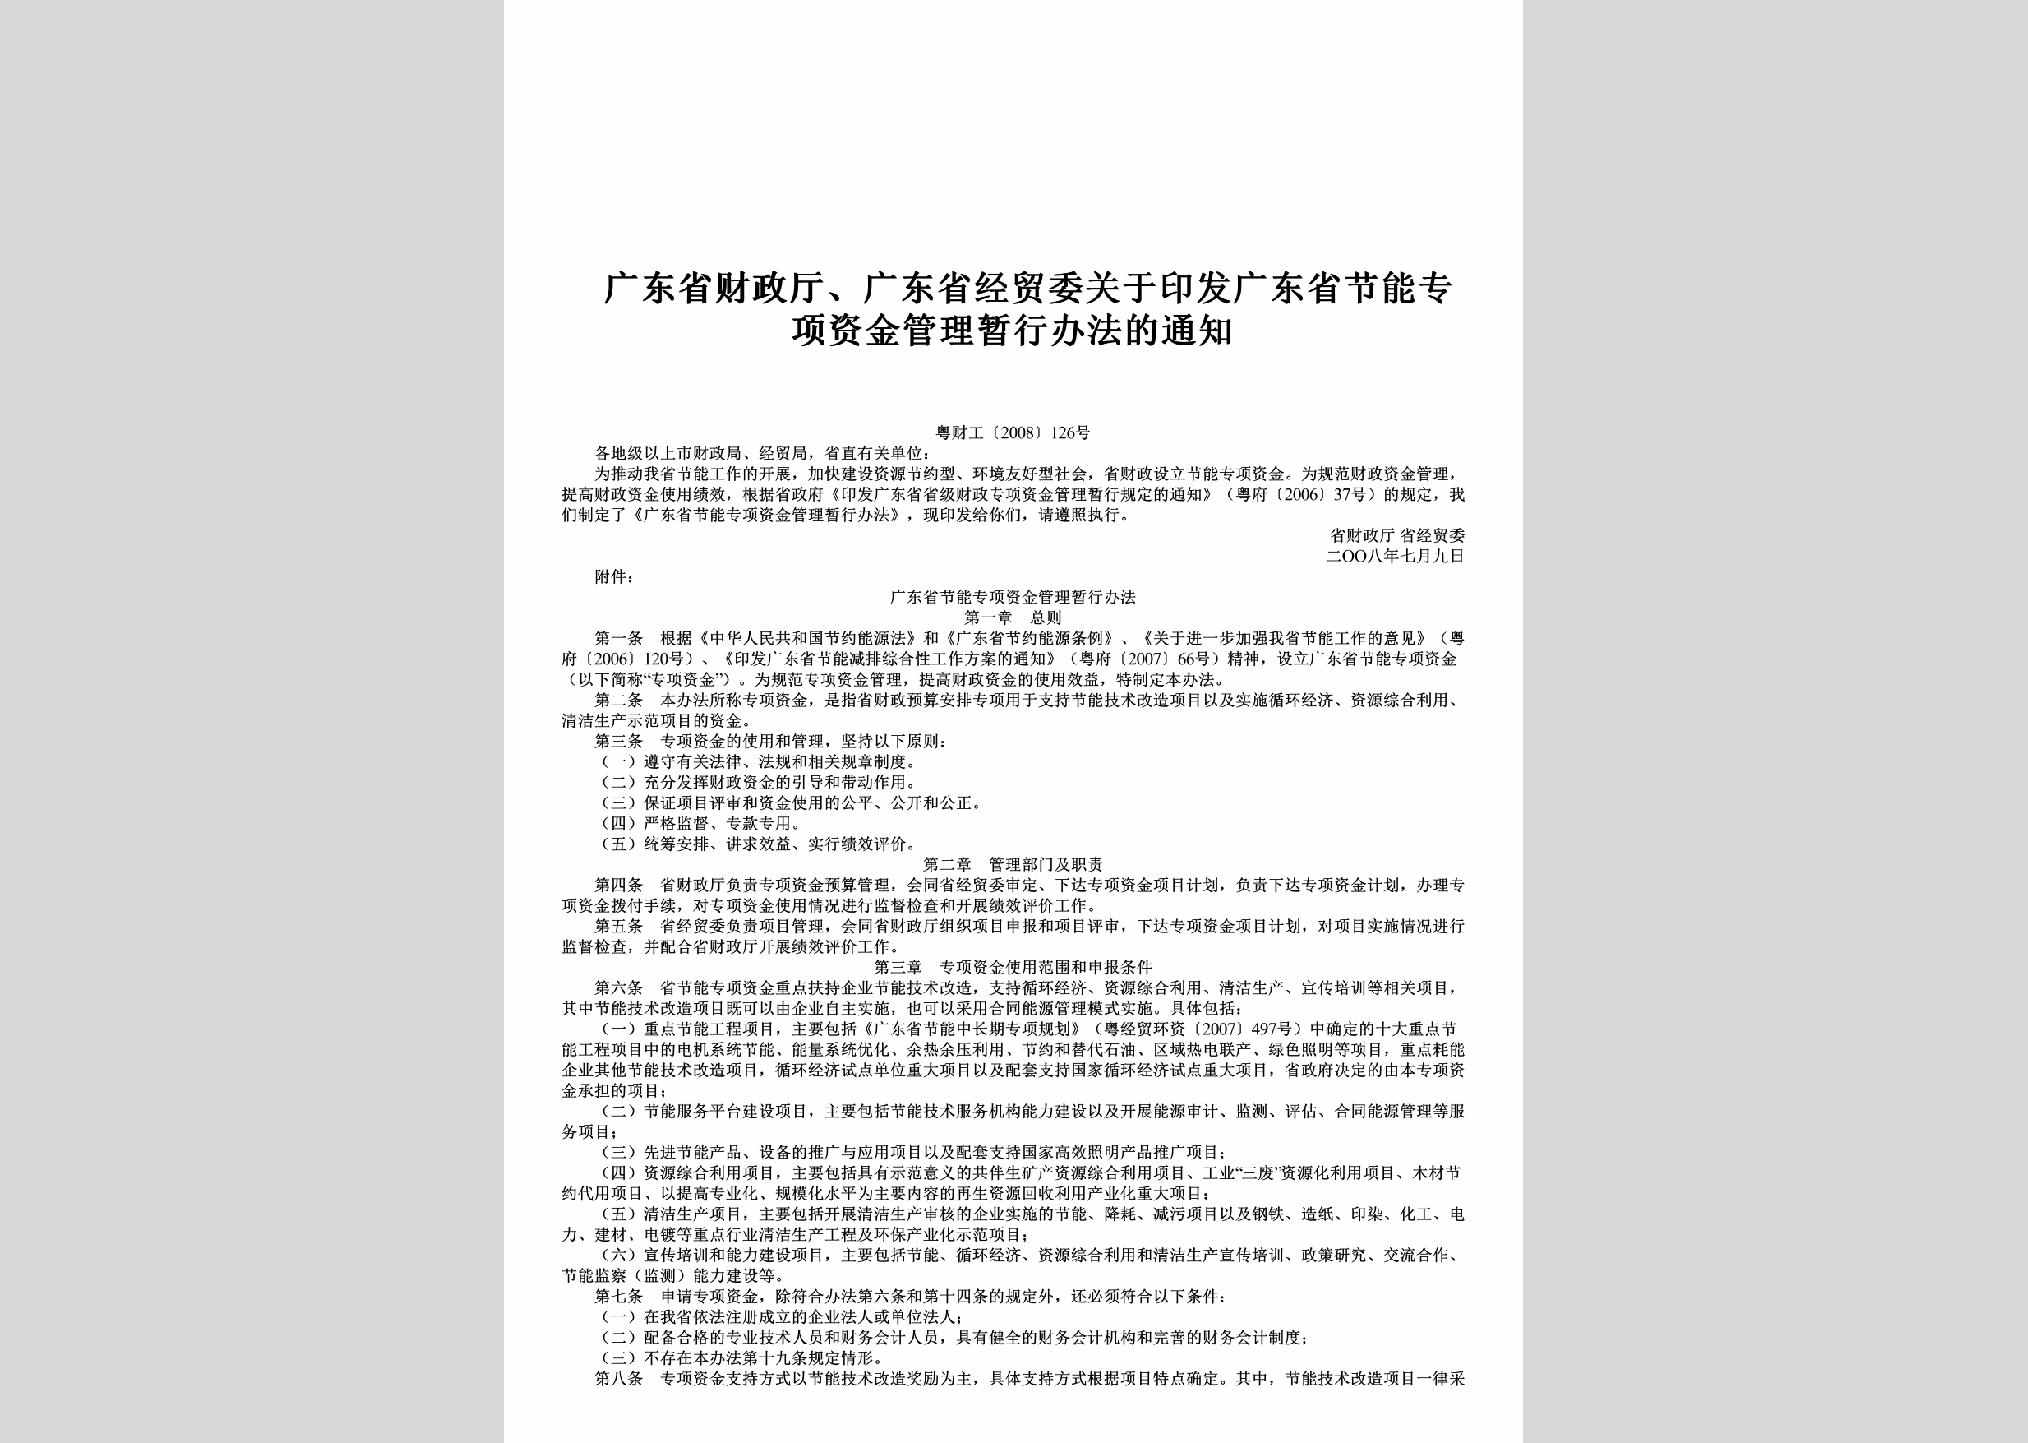 粤财工[2008]126号：关于印发广东省节能专项资金管理暂行办法的通知